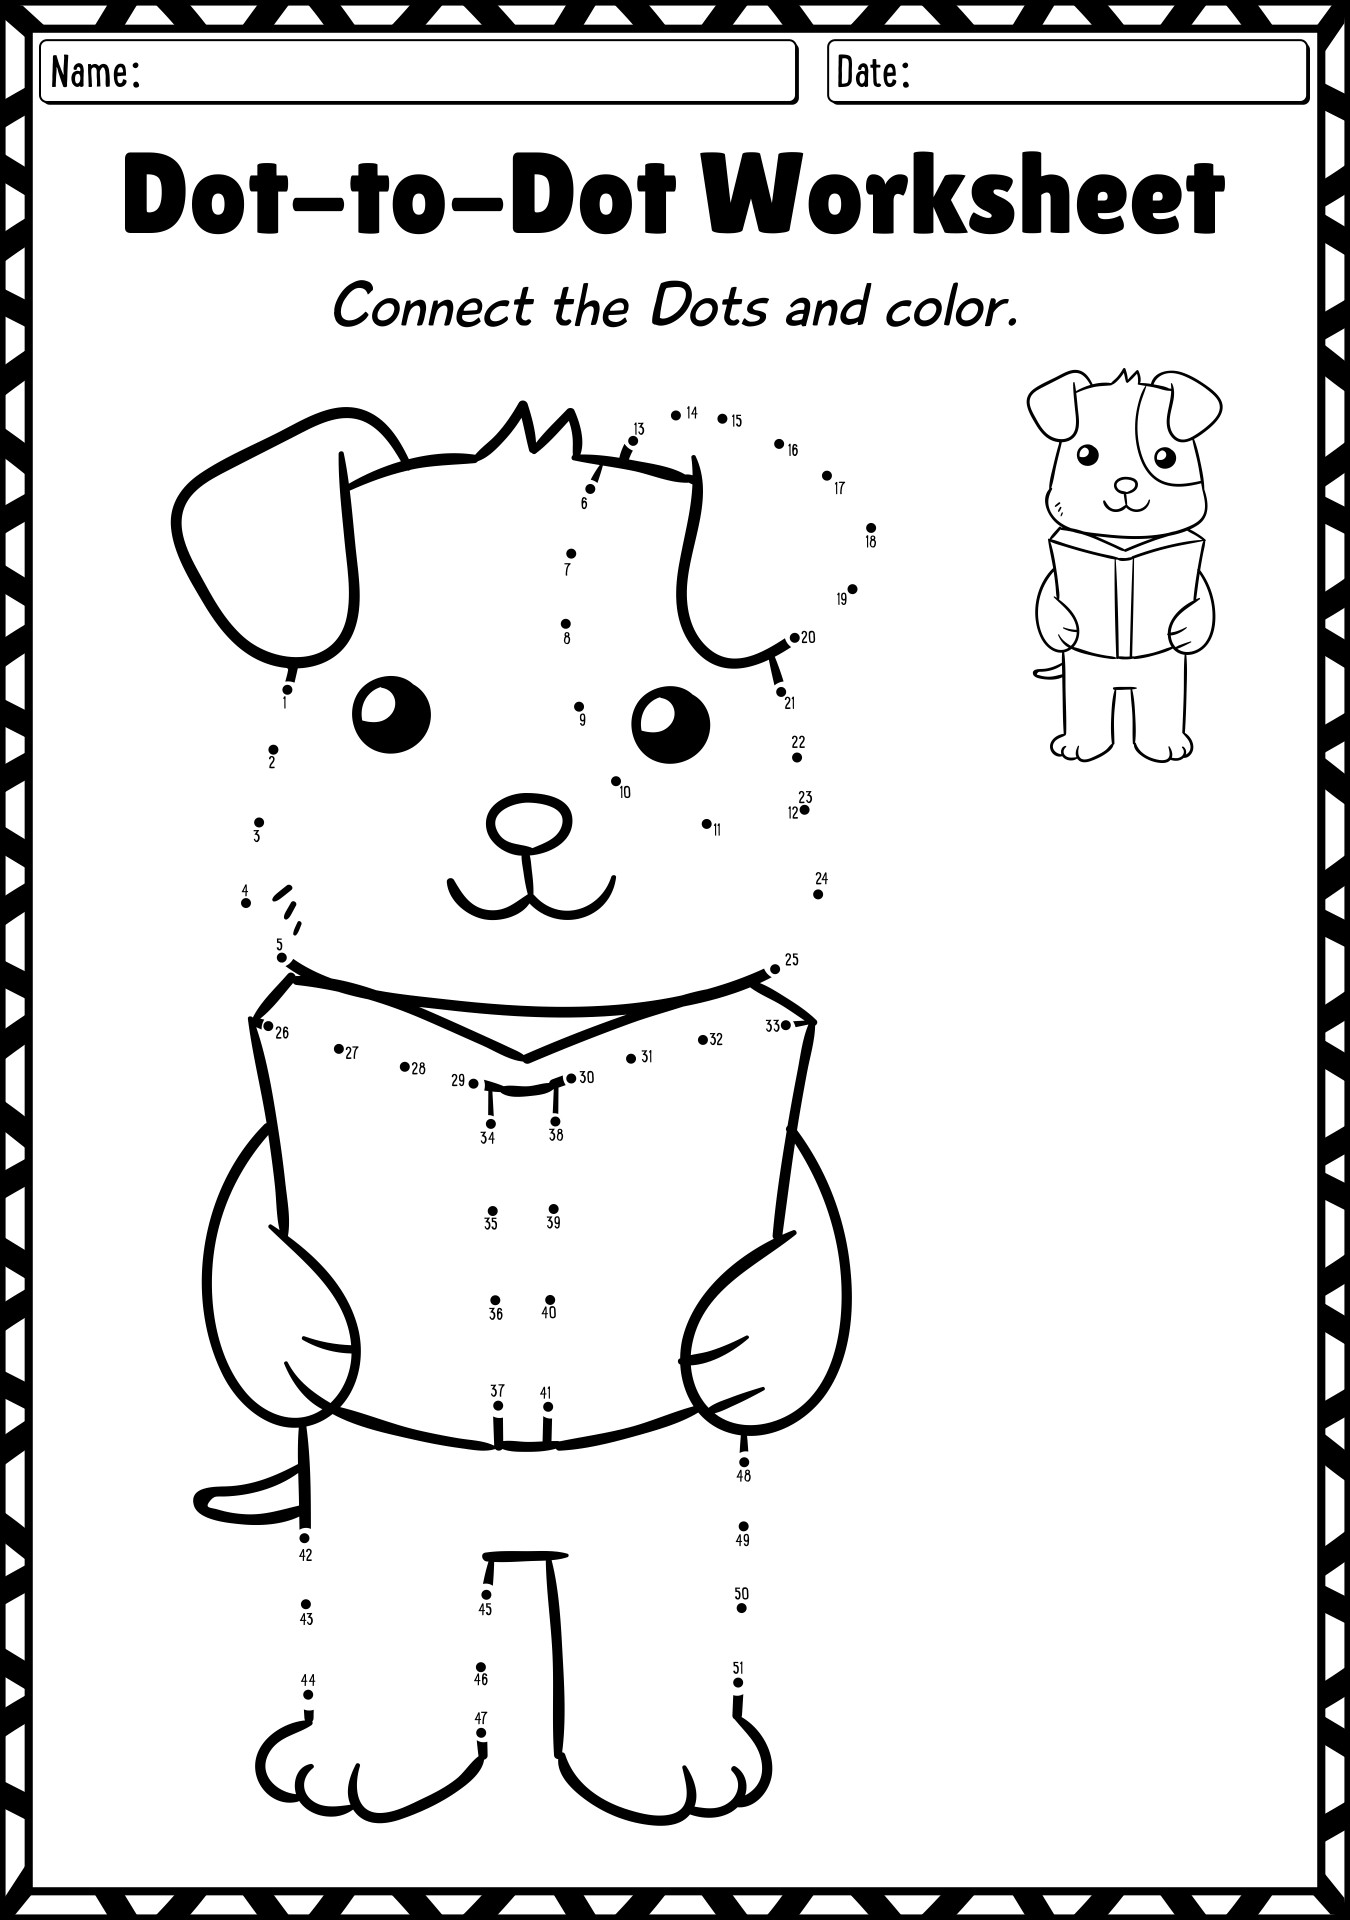 Dot-to-Dot Worksheets For 1st Grade